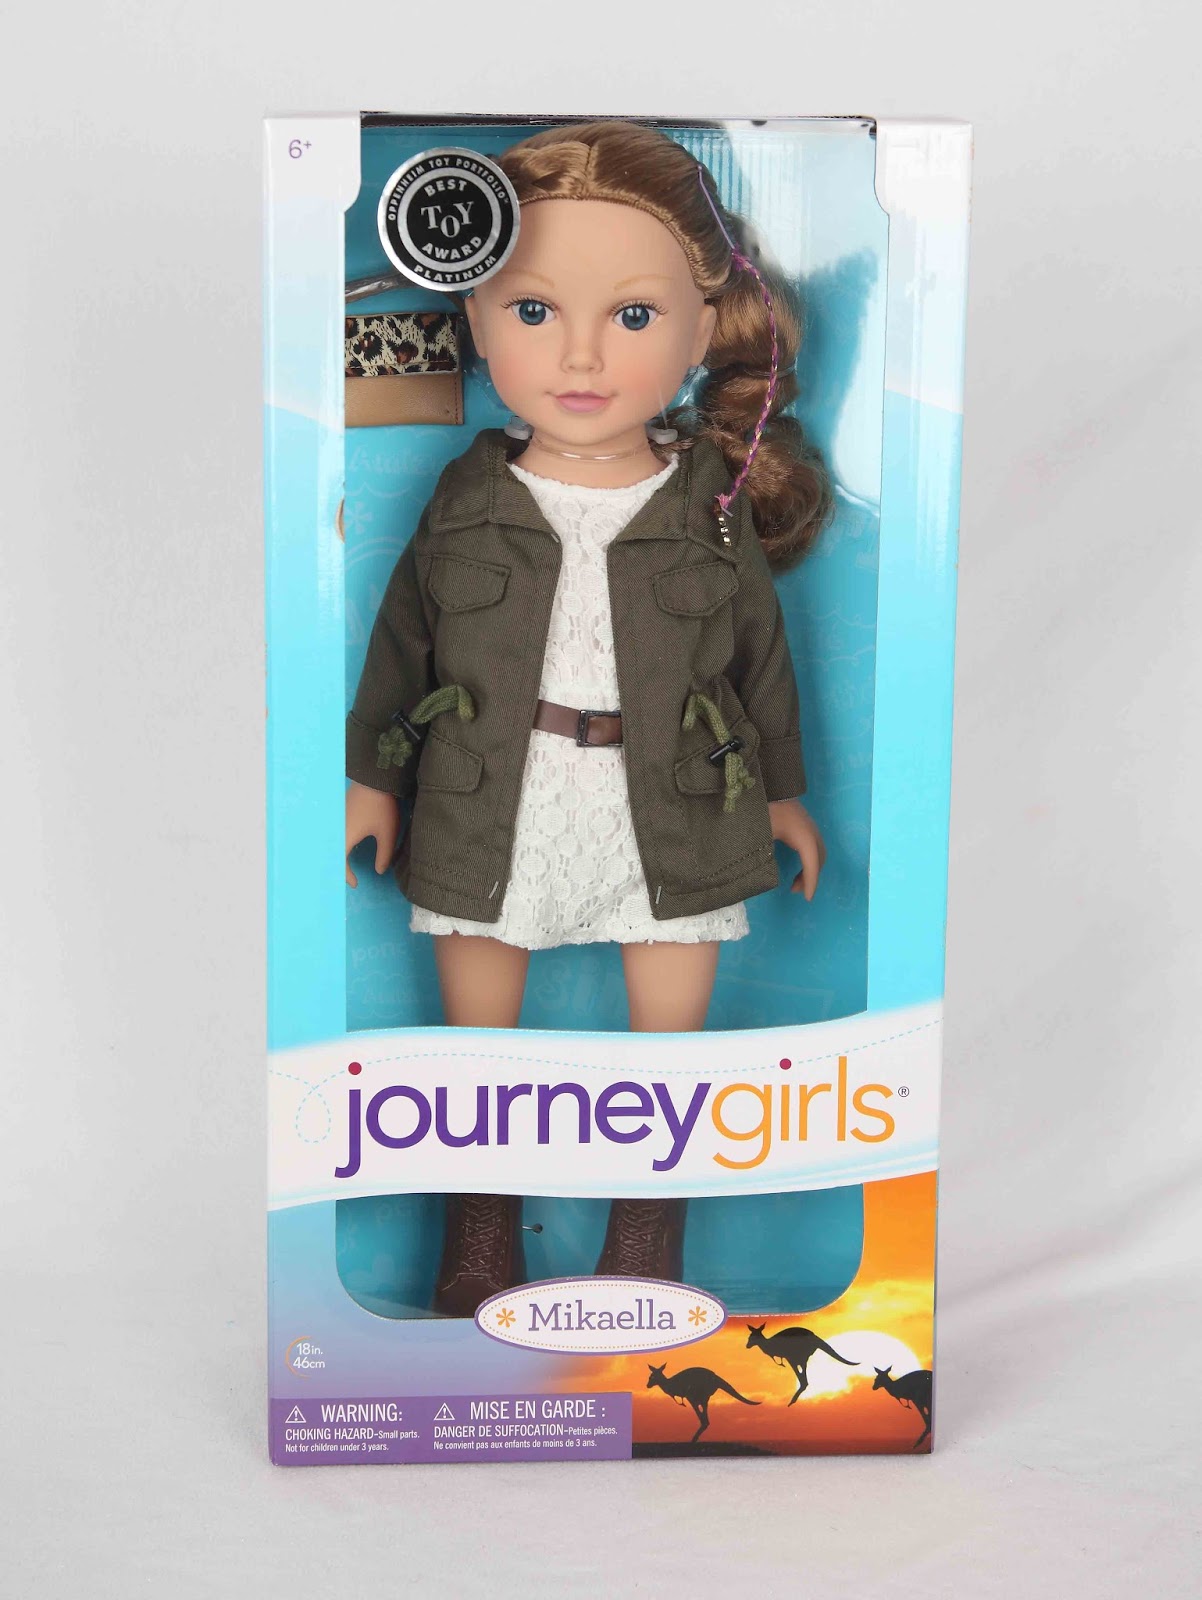 journey girl dolls australia